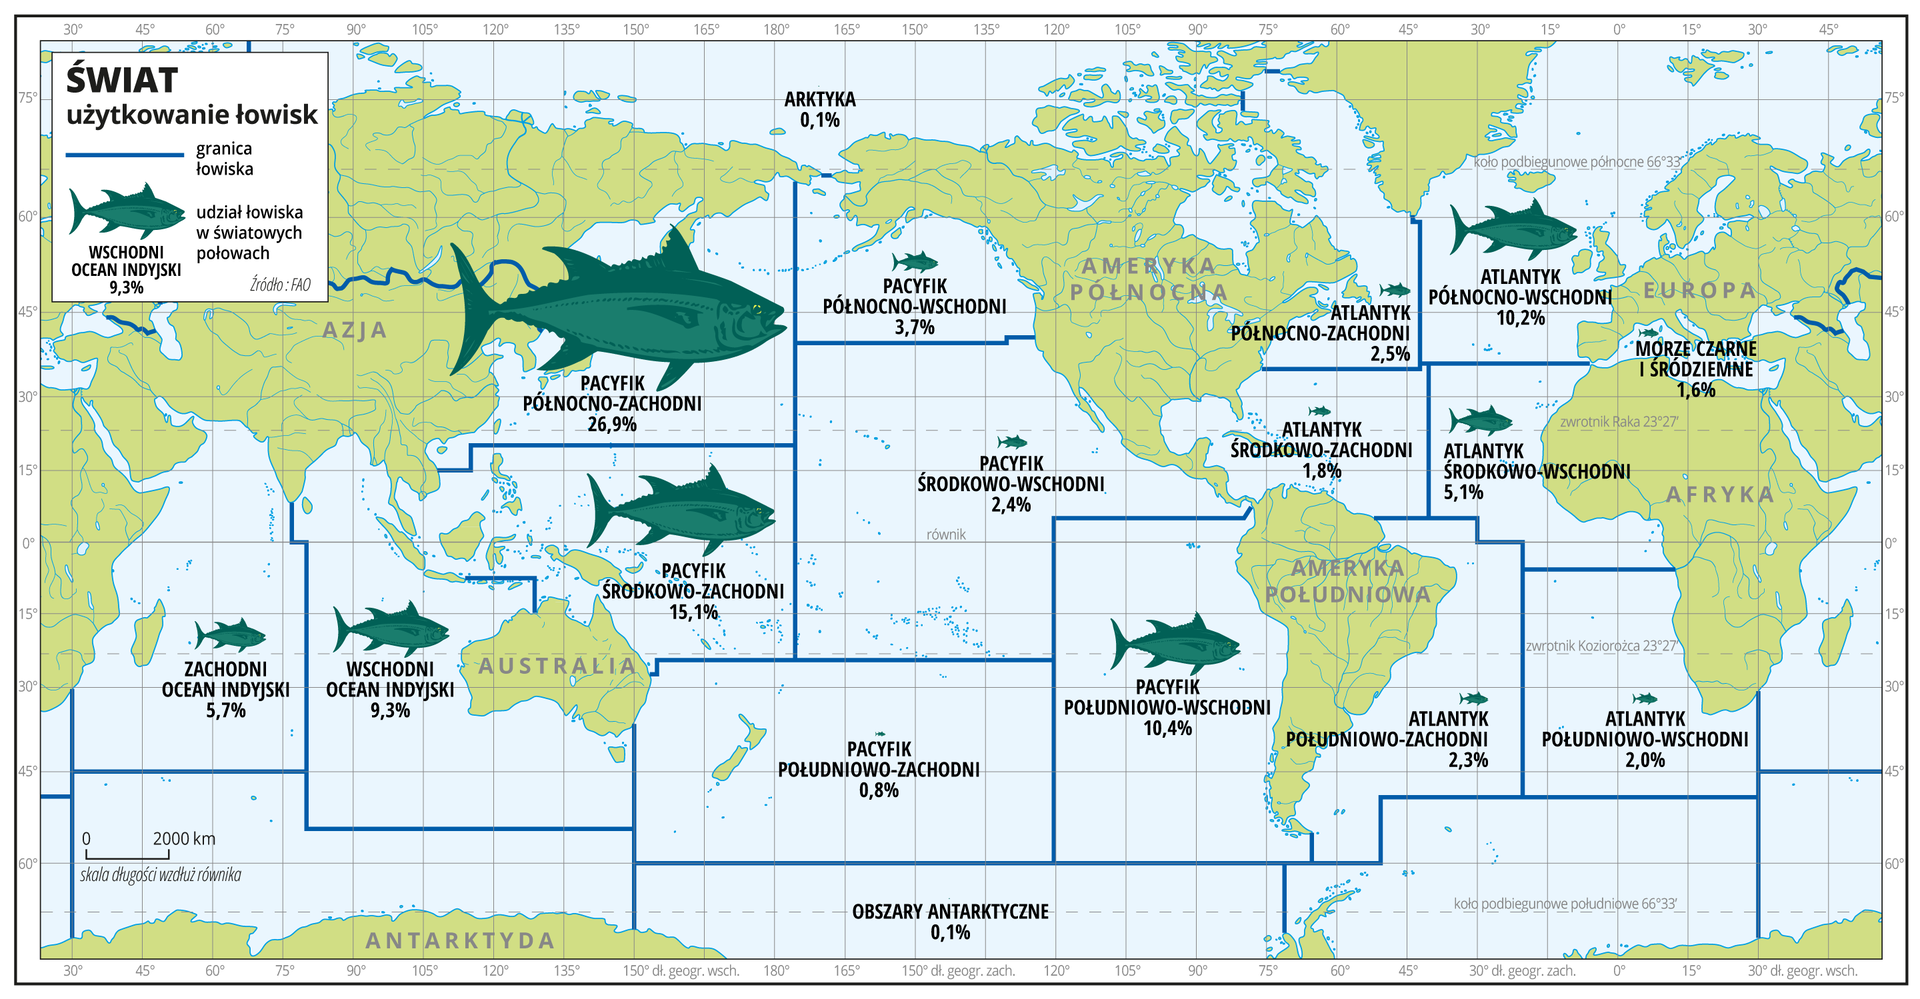 Ilustracja przedstawia mapę świata. Wody zaznaczono kolorem niebieskim. Opisano kontynenty.Na mapie za pomocą niebieskich linii przedstawiono granice łowisk. Na obszarze Oceanu Spokojnego i Atlantyckiego wydzielono po sześć łowisk, na obszarze Oceanu Indyjskiego – dwa łowiska. Za pomocą sygnatur ryb o zróżnicowanej wielkości przedstawiono udział danego łowiska w połowach światowych. Opisano wartości liczbowe w procentach. Największa sygnatura znajduje się na terenie łowiska Pacyfiku Północno-Zachodniego – dwadzieścia sześć procent udziału łowiska w połowach światowych.Mapa pokryta jest równoleżnikami i południkami. Dookoła mapy w białej ramce opisano współrzędne geograficzne co piętnaście stopni.Na górze w legendzie mapy objaśniono znaki użyte na mapie.